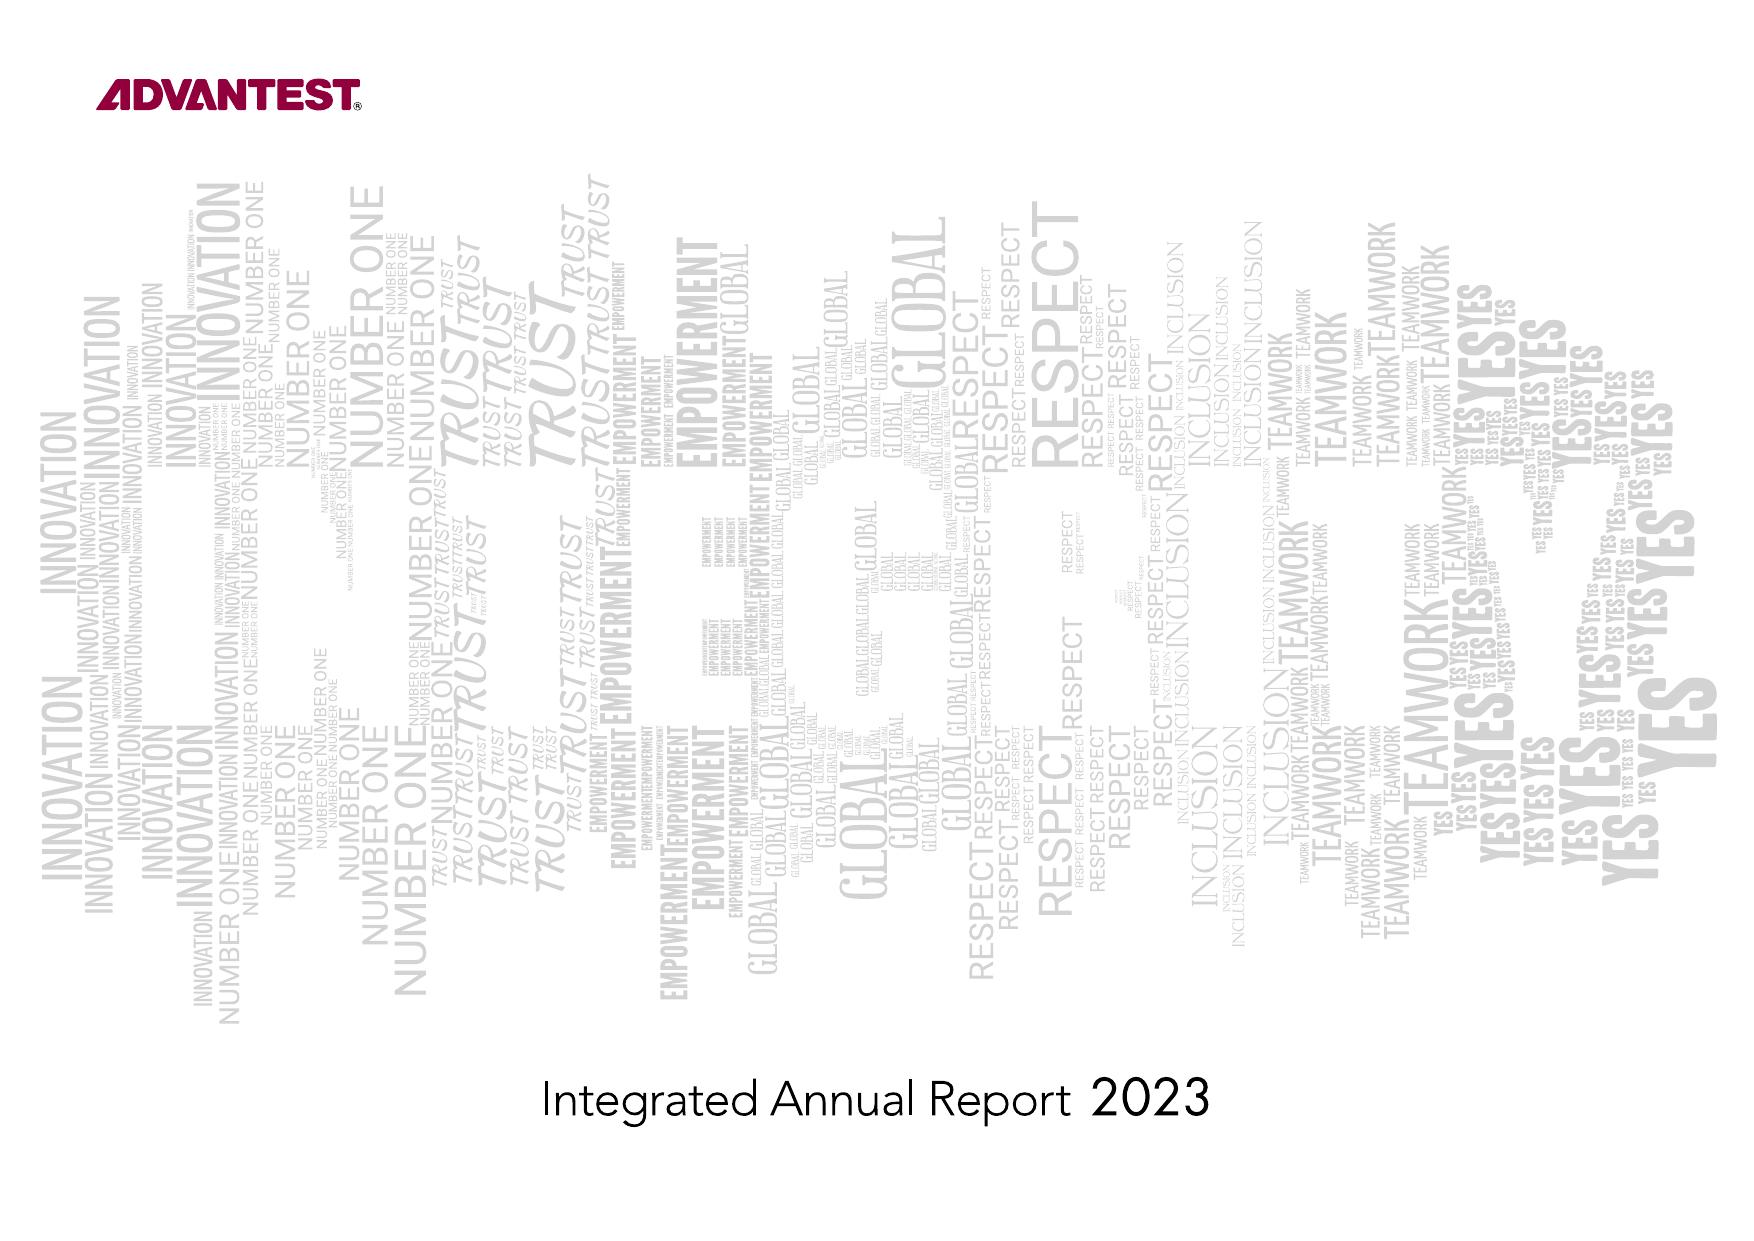 ADVANTEST 2023 Annual Report